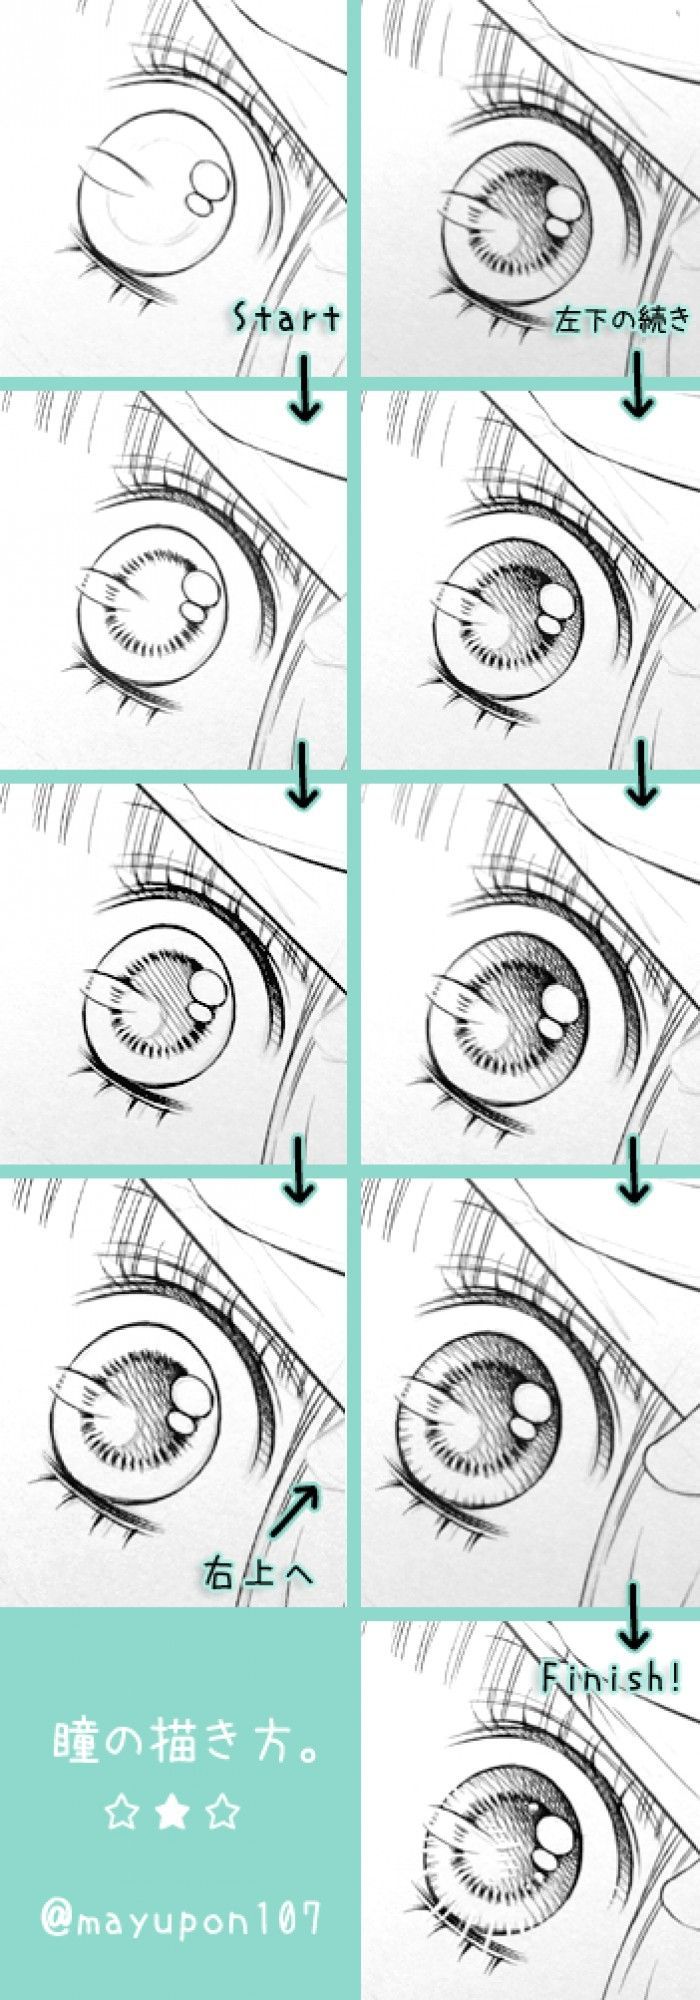 Technique de mangaka : Comment dessiner les yeux en manga ?